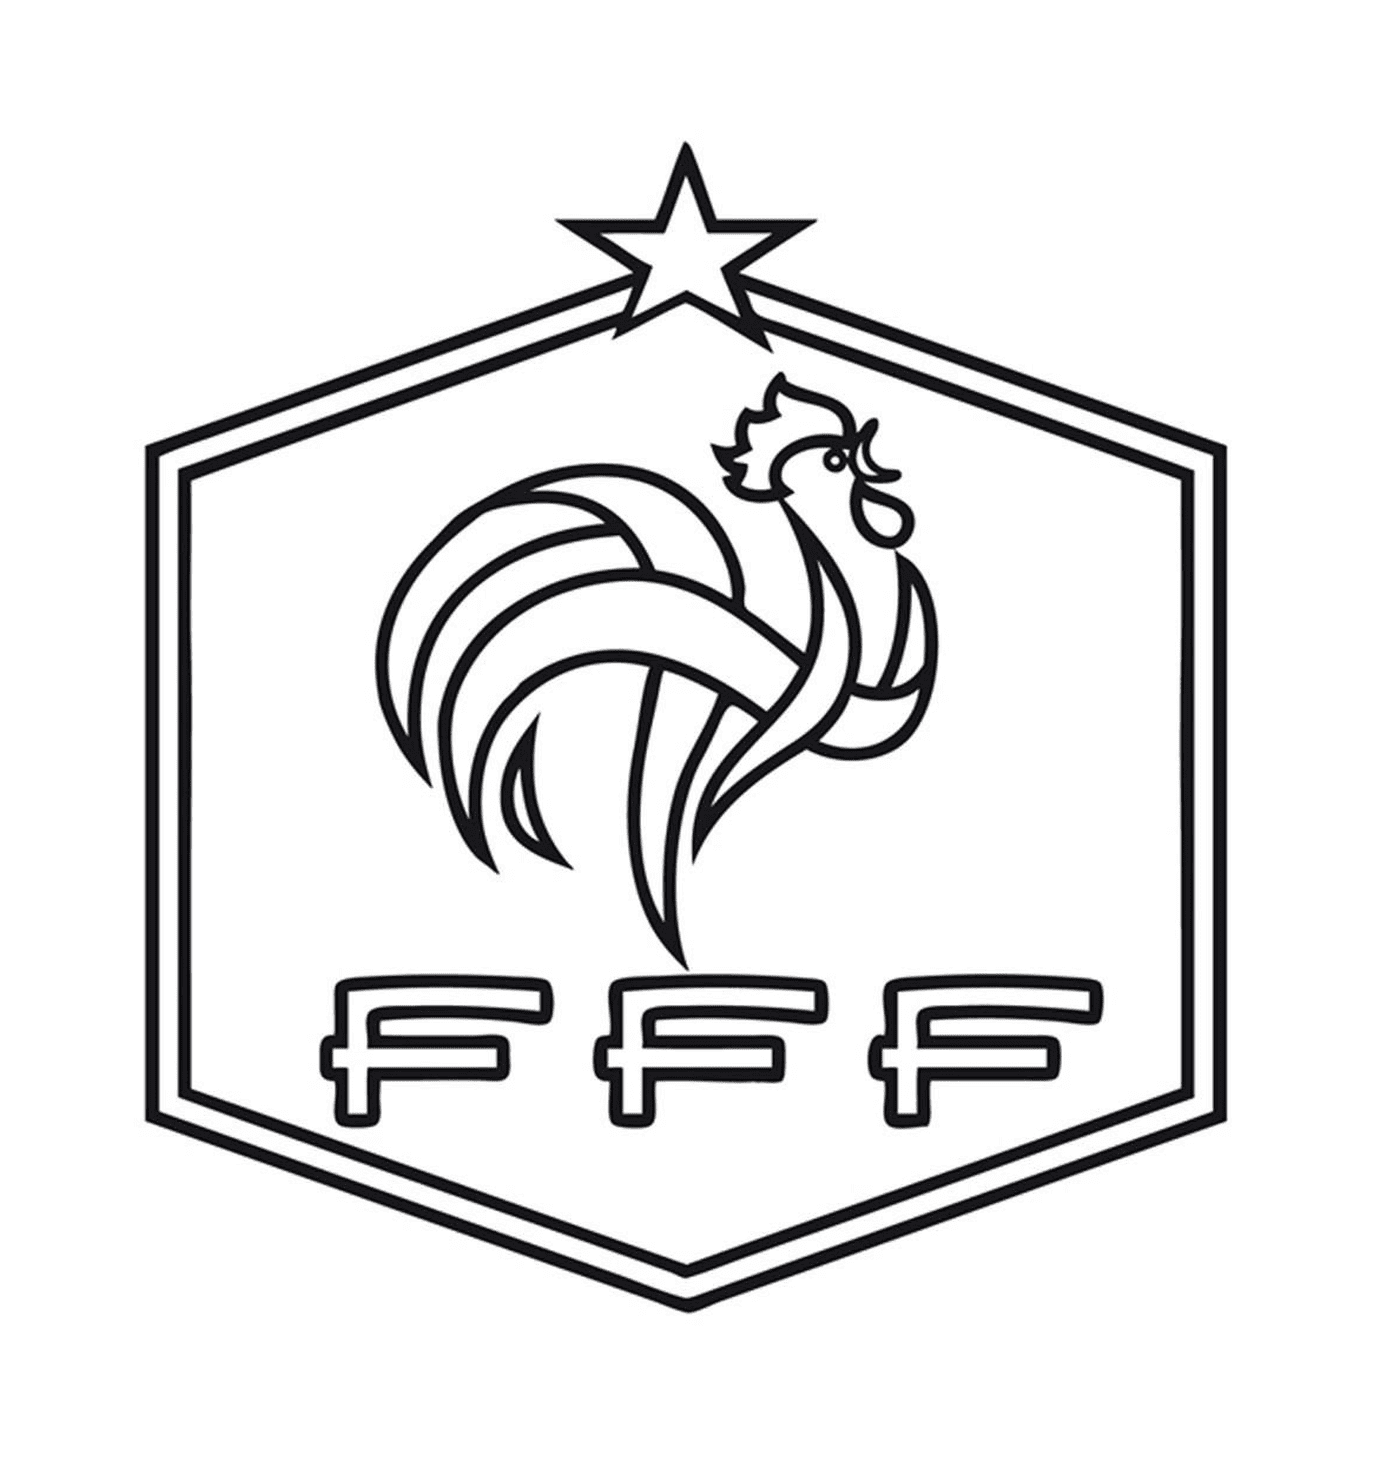   Coq emblématique de la FFF 